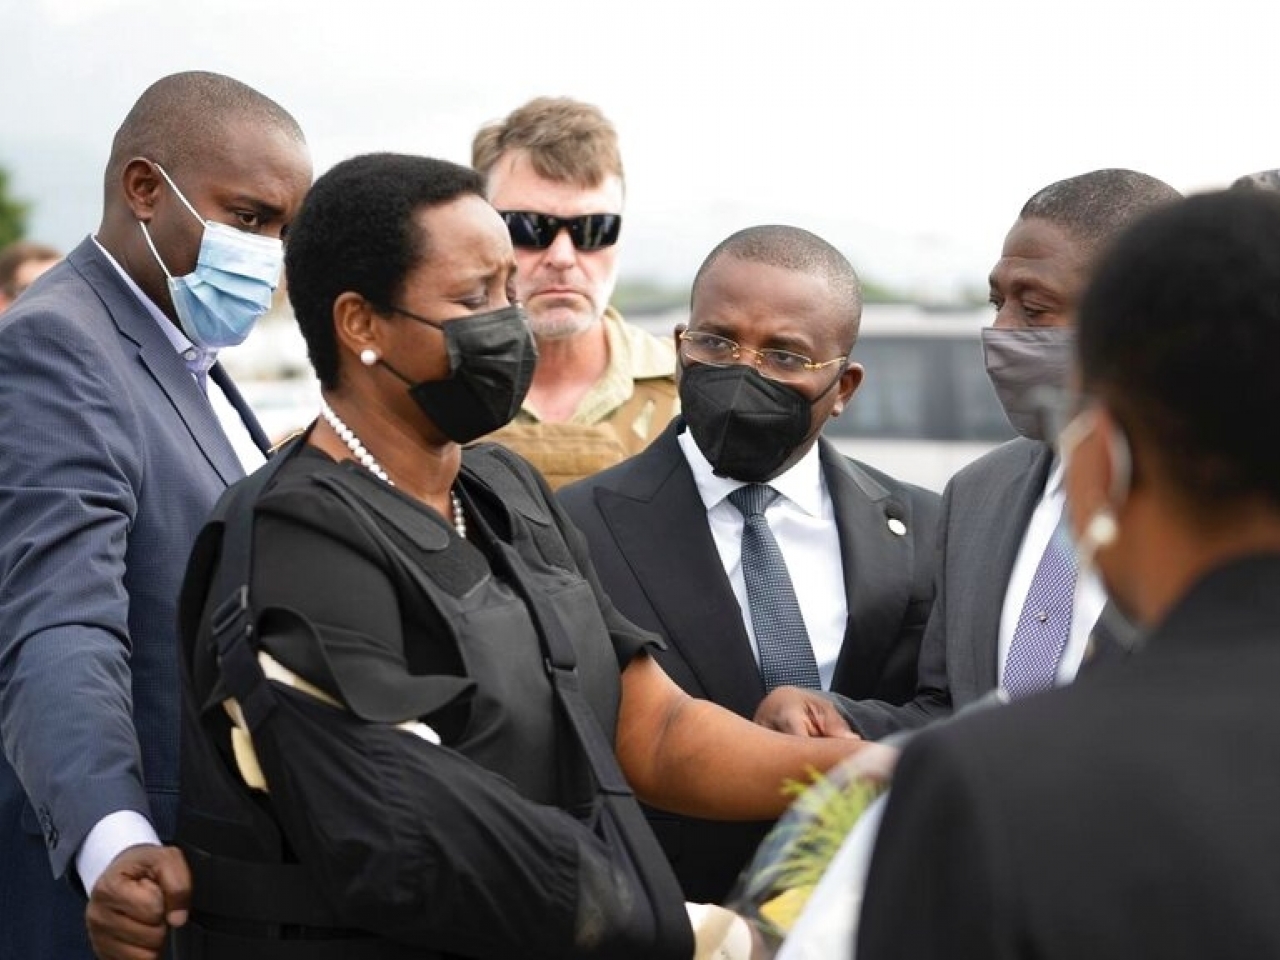 有片 | 海地總統遺孀回國參加丈夫葬禮 纏繃帶穿防彈衣